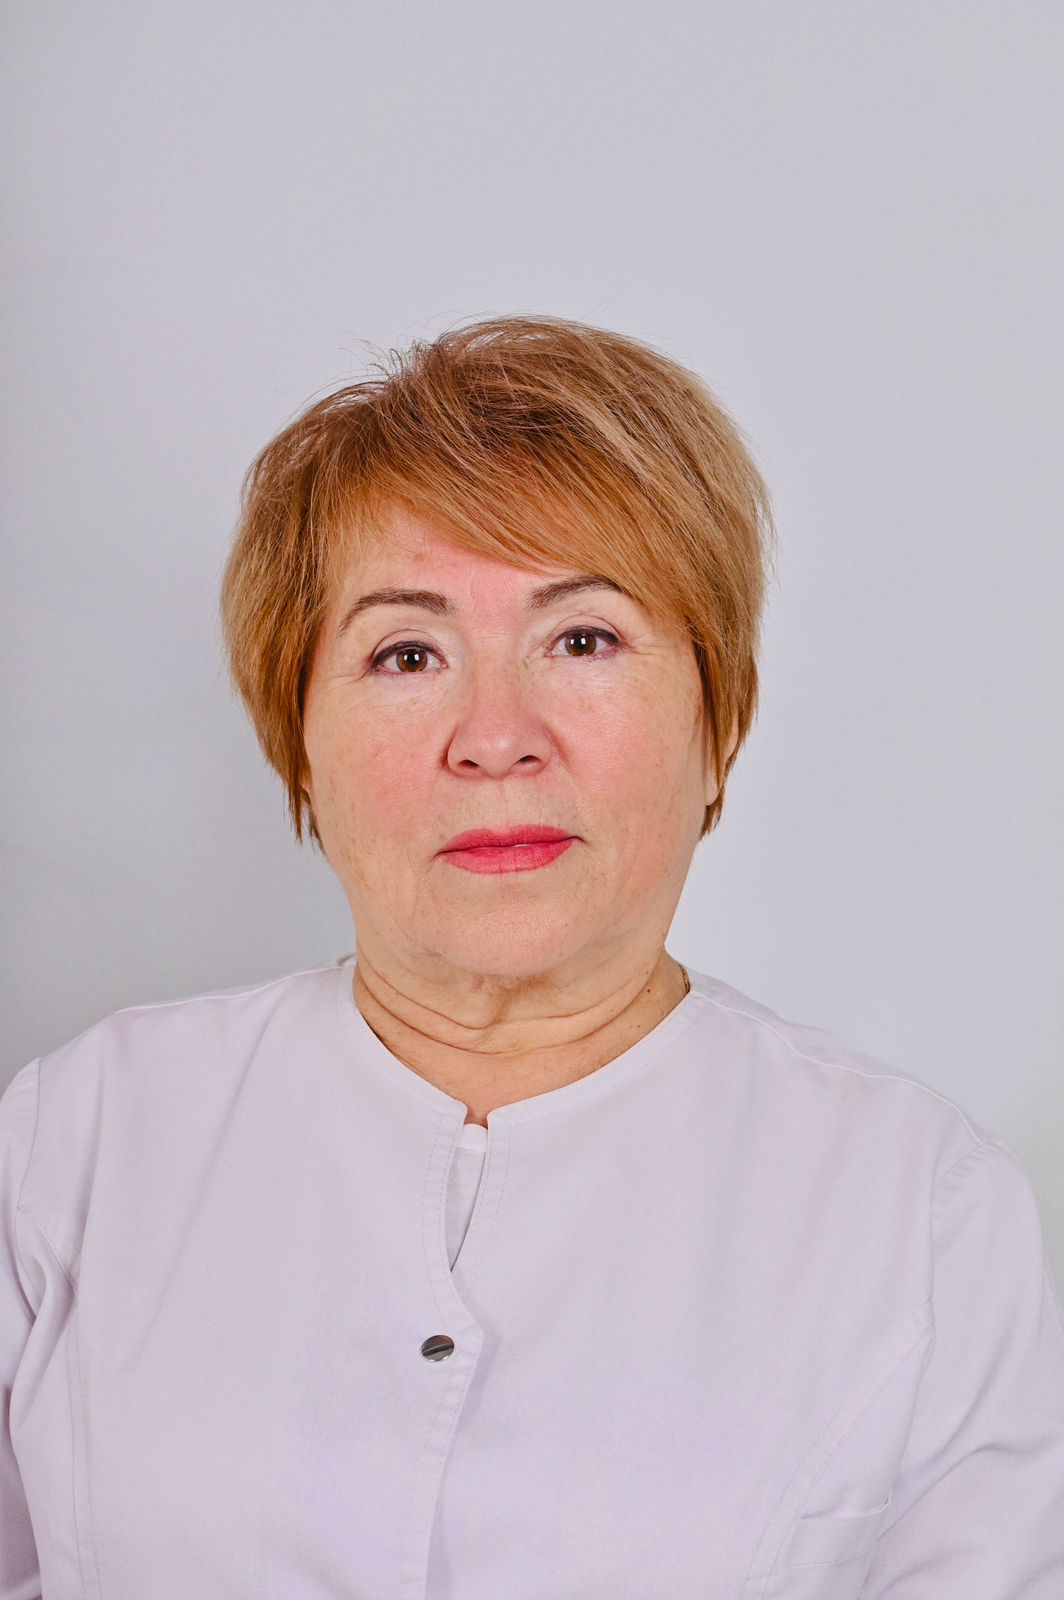 Филиппова Ольга Владимировна